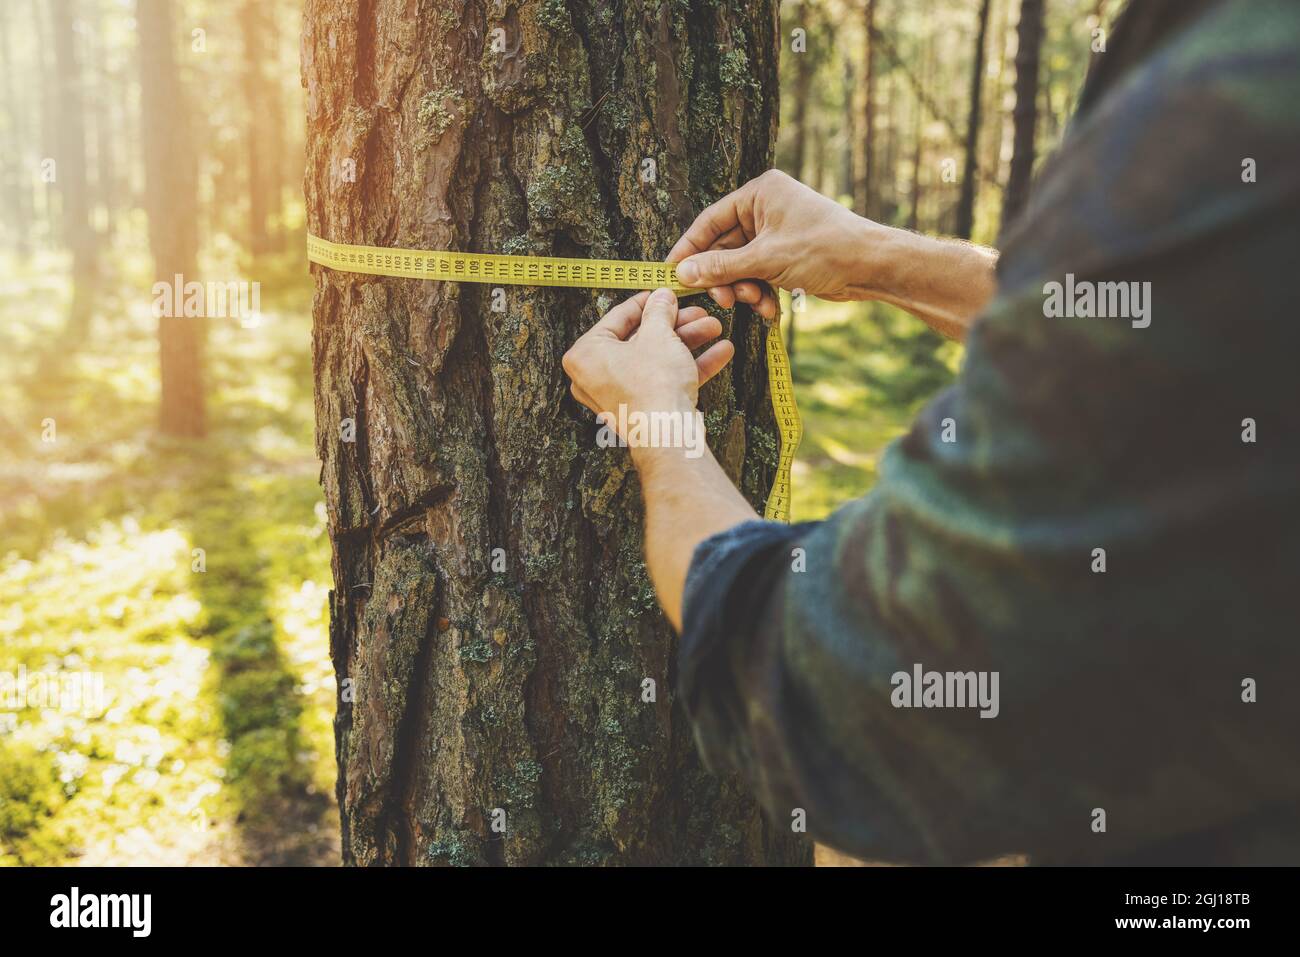 Entwaldung und Waldbewertung - Mann, der den Umfang eines Baumes mit einem Linealband misst Stockfoto